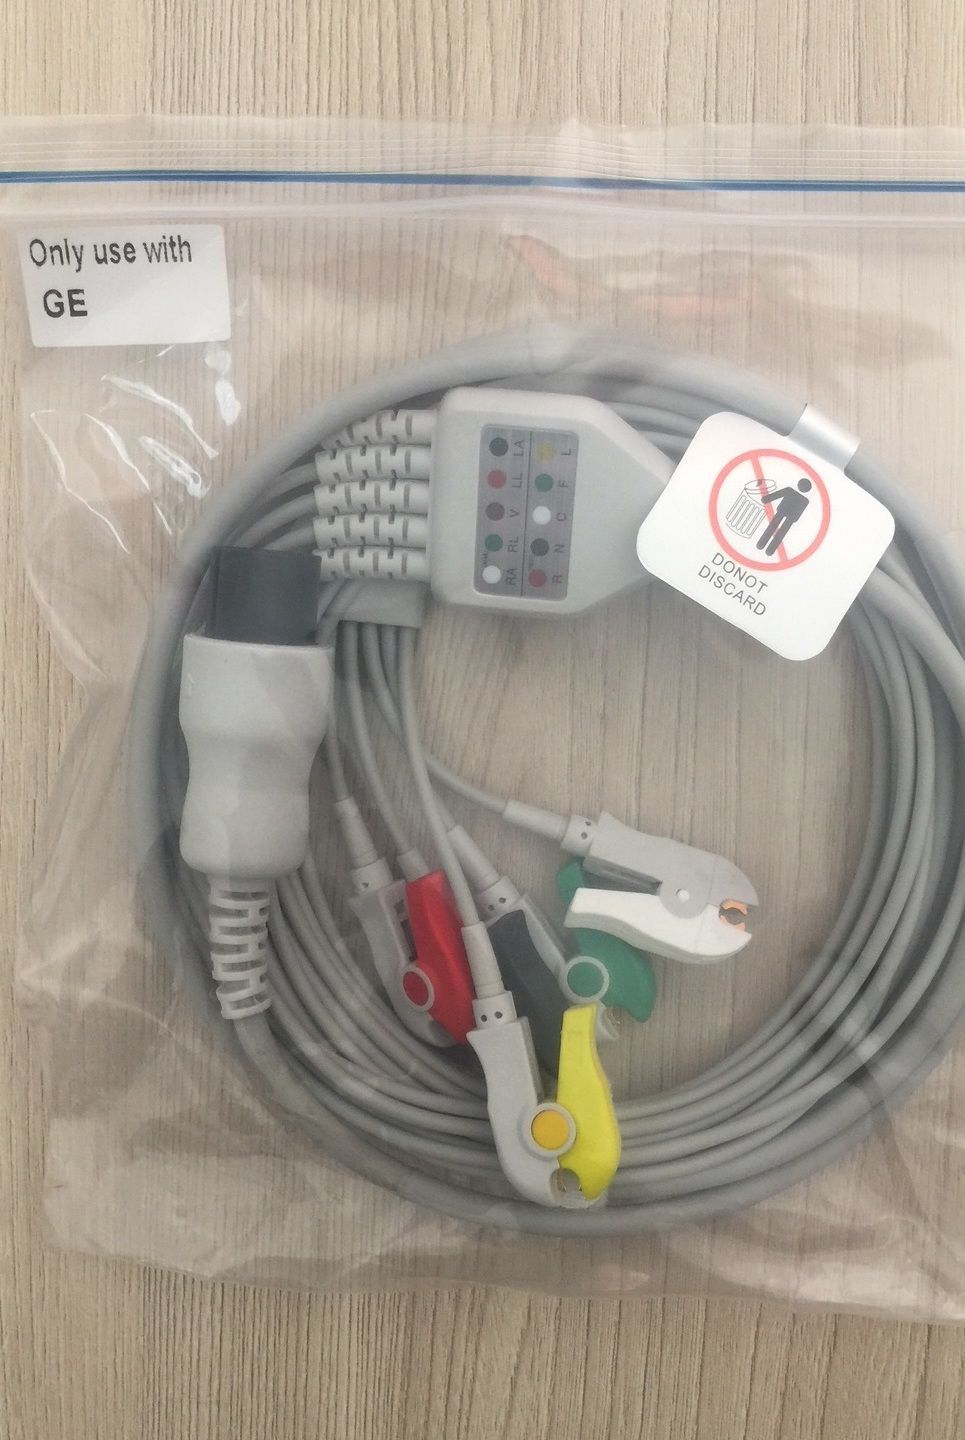 ECG Cable for GE Dinamap Pro1000_สายอีซีจีเคเบิ้ลสำหรับเครื่องวัดความดัน GE Dinamap Pro1000